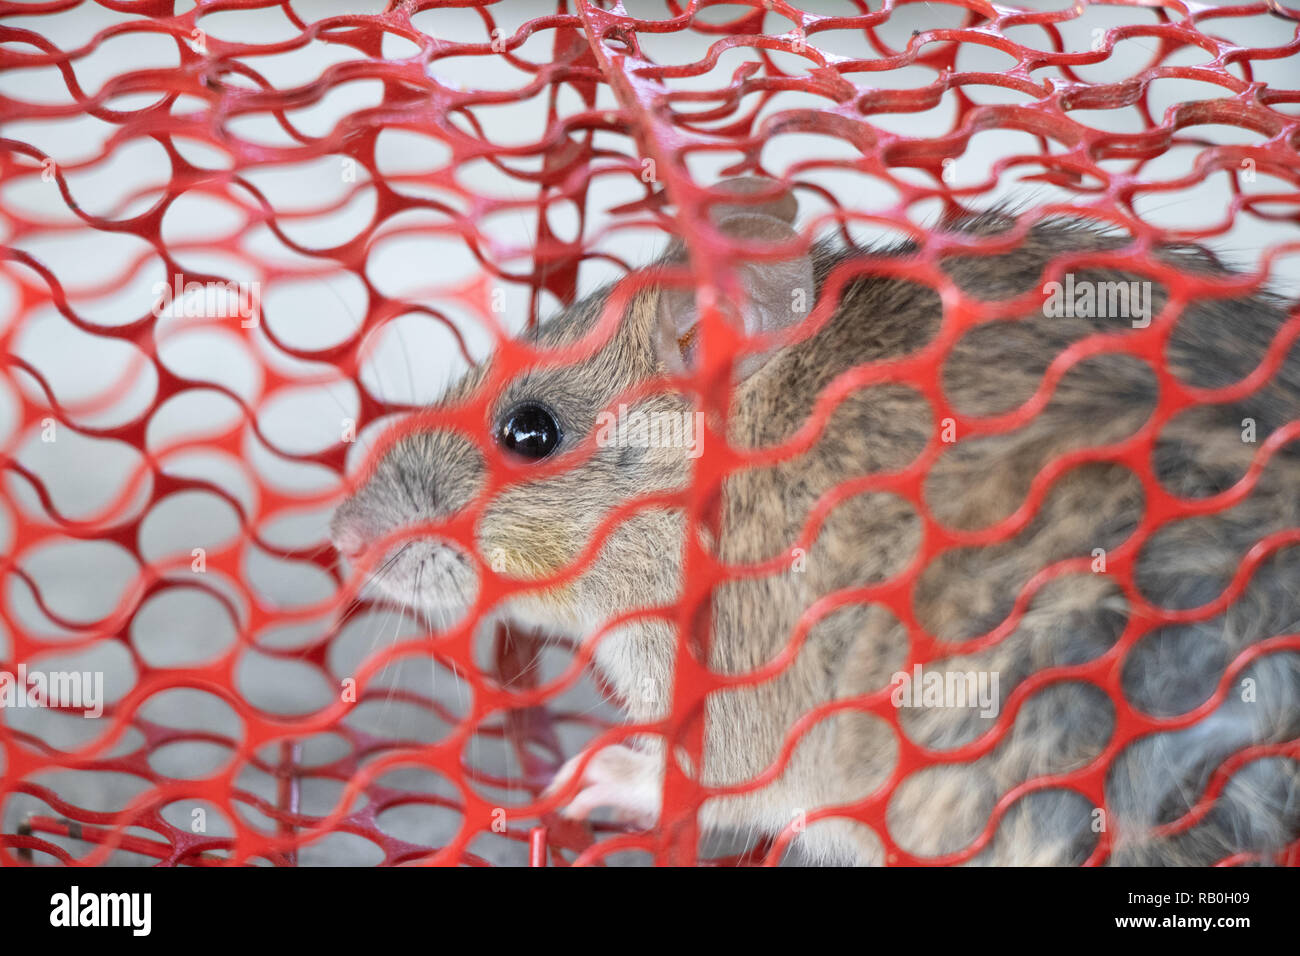 Maus oder Ratte in einem roten Käfig gefangen Stockfoto